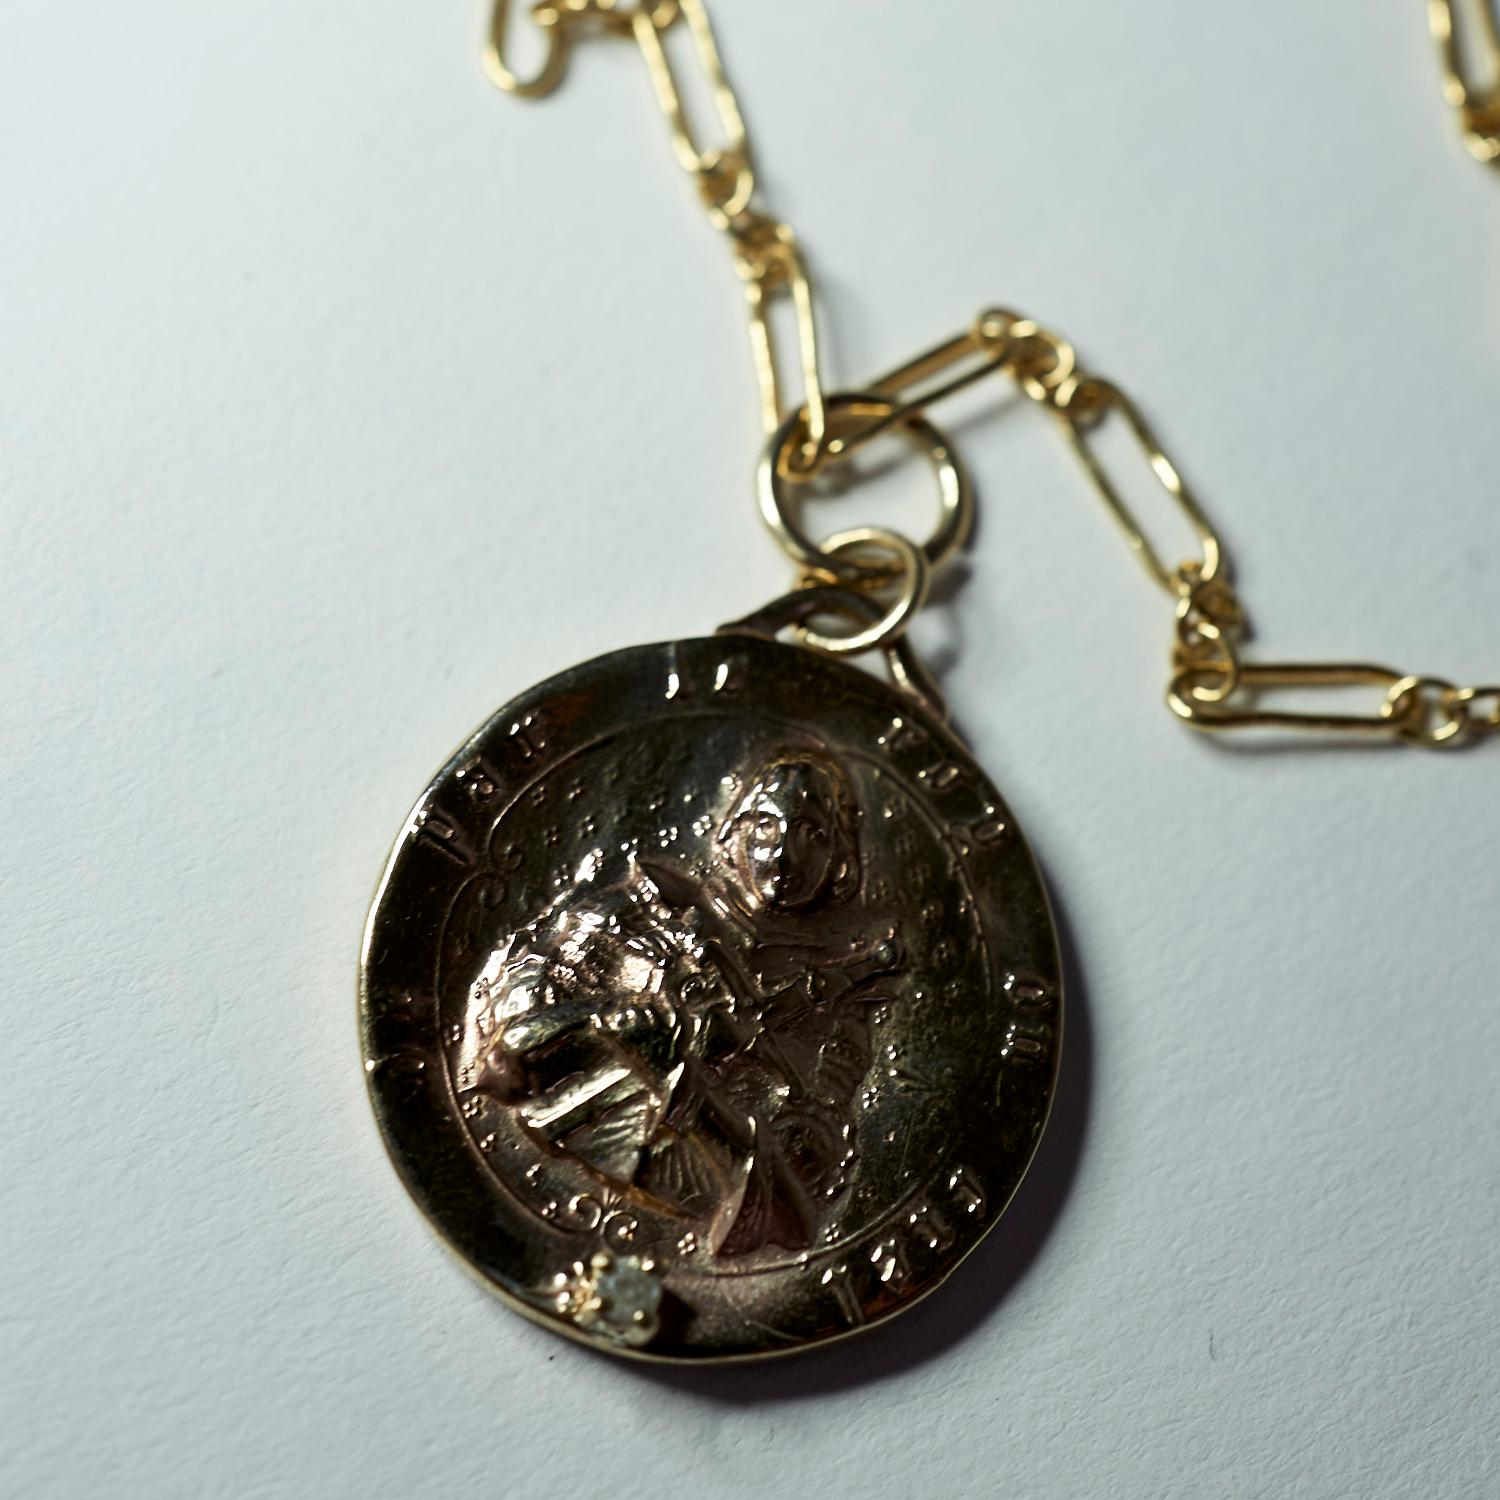 Rohdiamant Französisch Saint Jeanne d'Arc Medaille Münze Bronze Anhänger Gold gefüllt Kette Halskette J DAUPHIN

Exklusive Stück mit Jeanne d'Arc Medaille Runde Münze Anhänger in Bronze mit einem Smaragd und eine Gold gefüllt Kette. Die Halskette